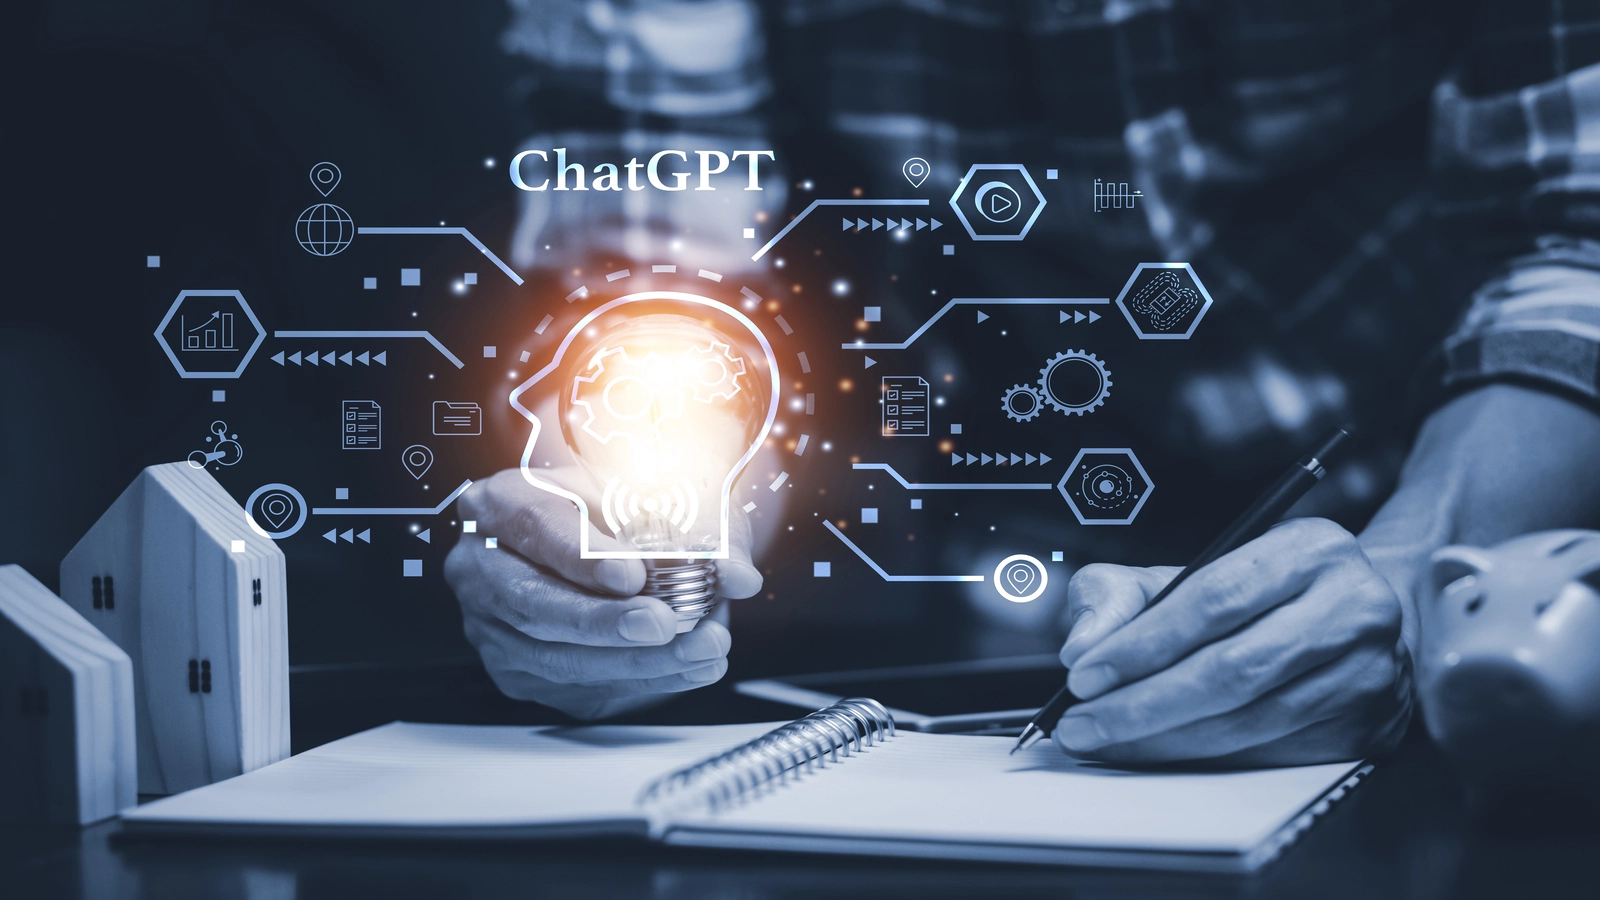 Chatgpt 4'ün gelecekte yapay zeka teknolojileri için ne gibi fırsatlar sunacağına dair tahminler nelerdir?